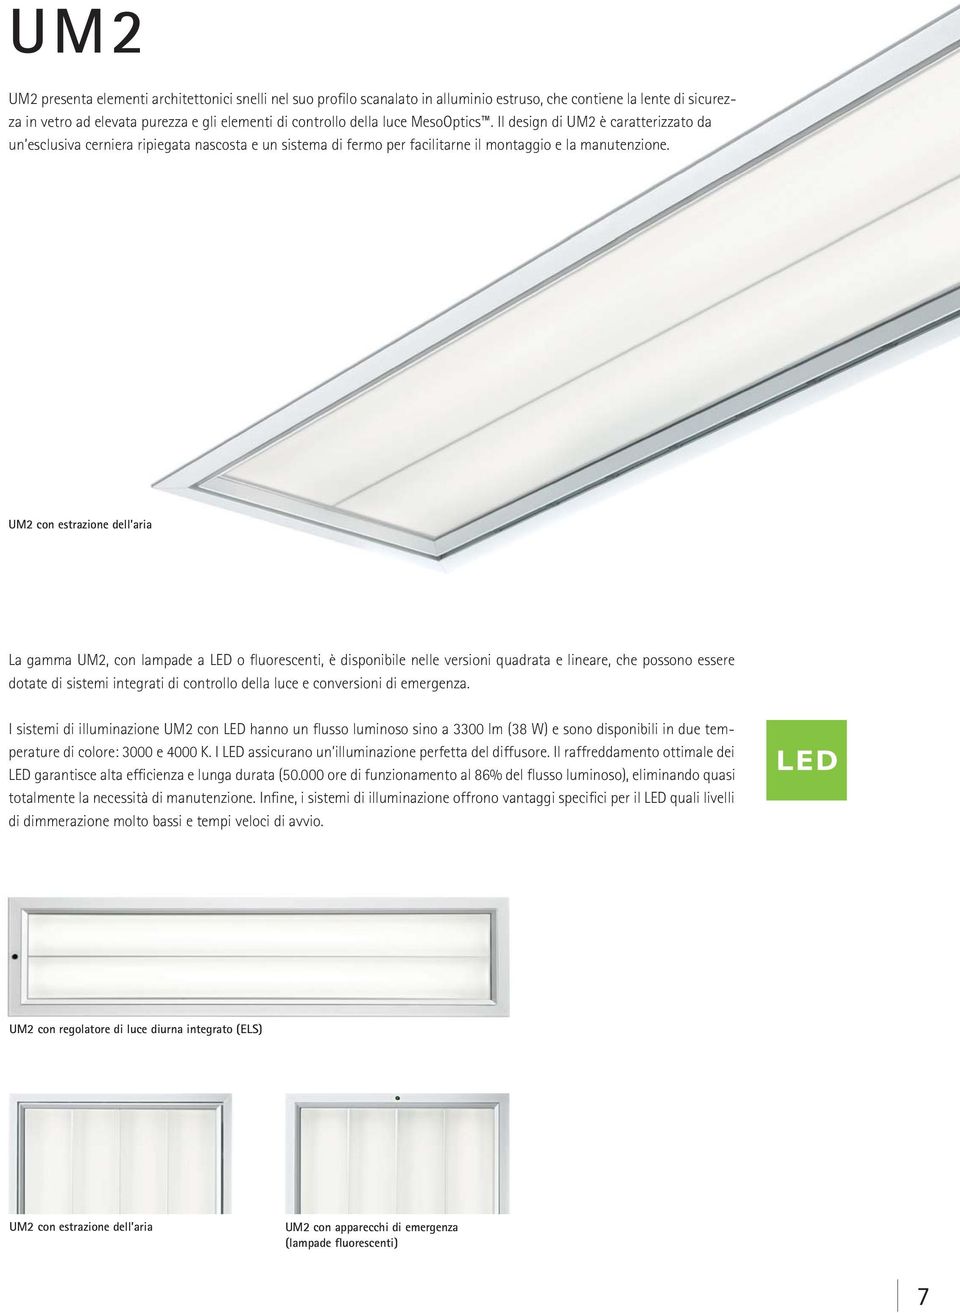 UM2 con estrazione dell aria La gamma UM2, con lampade a LED o fluorescenti, è disponibile nelle versioni quadrata e lineare, che possono essere dotate di sistemi integrati di controllo della luce e